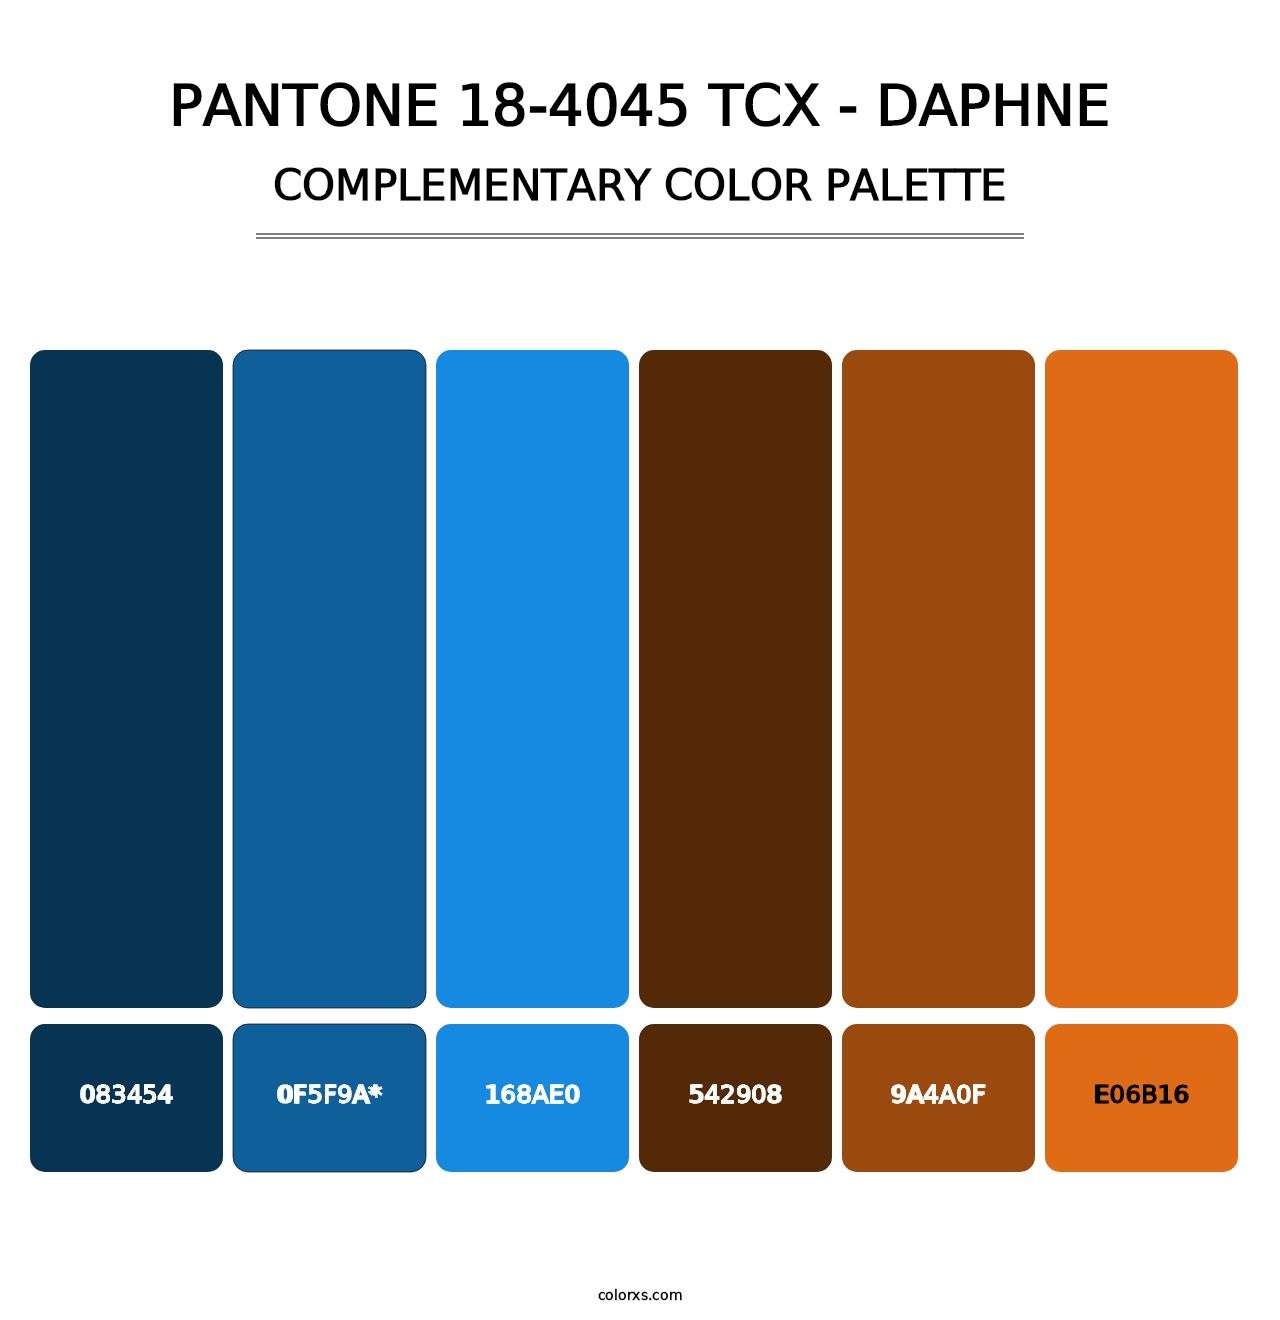 PANTONE 18-4045 TCX - Daphne - Complementary Color Palette